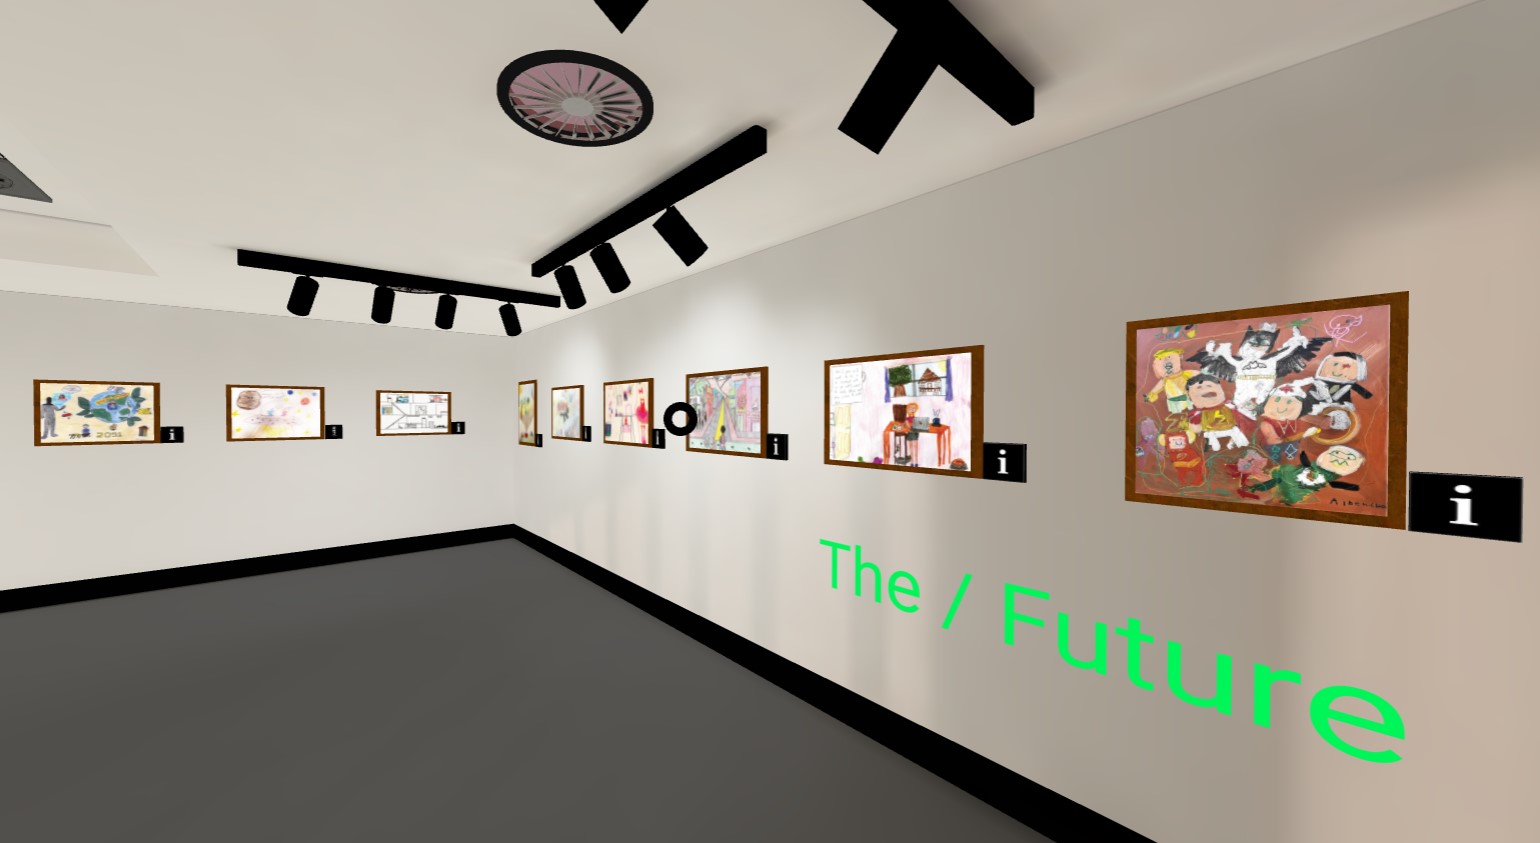 The future exhibition